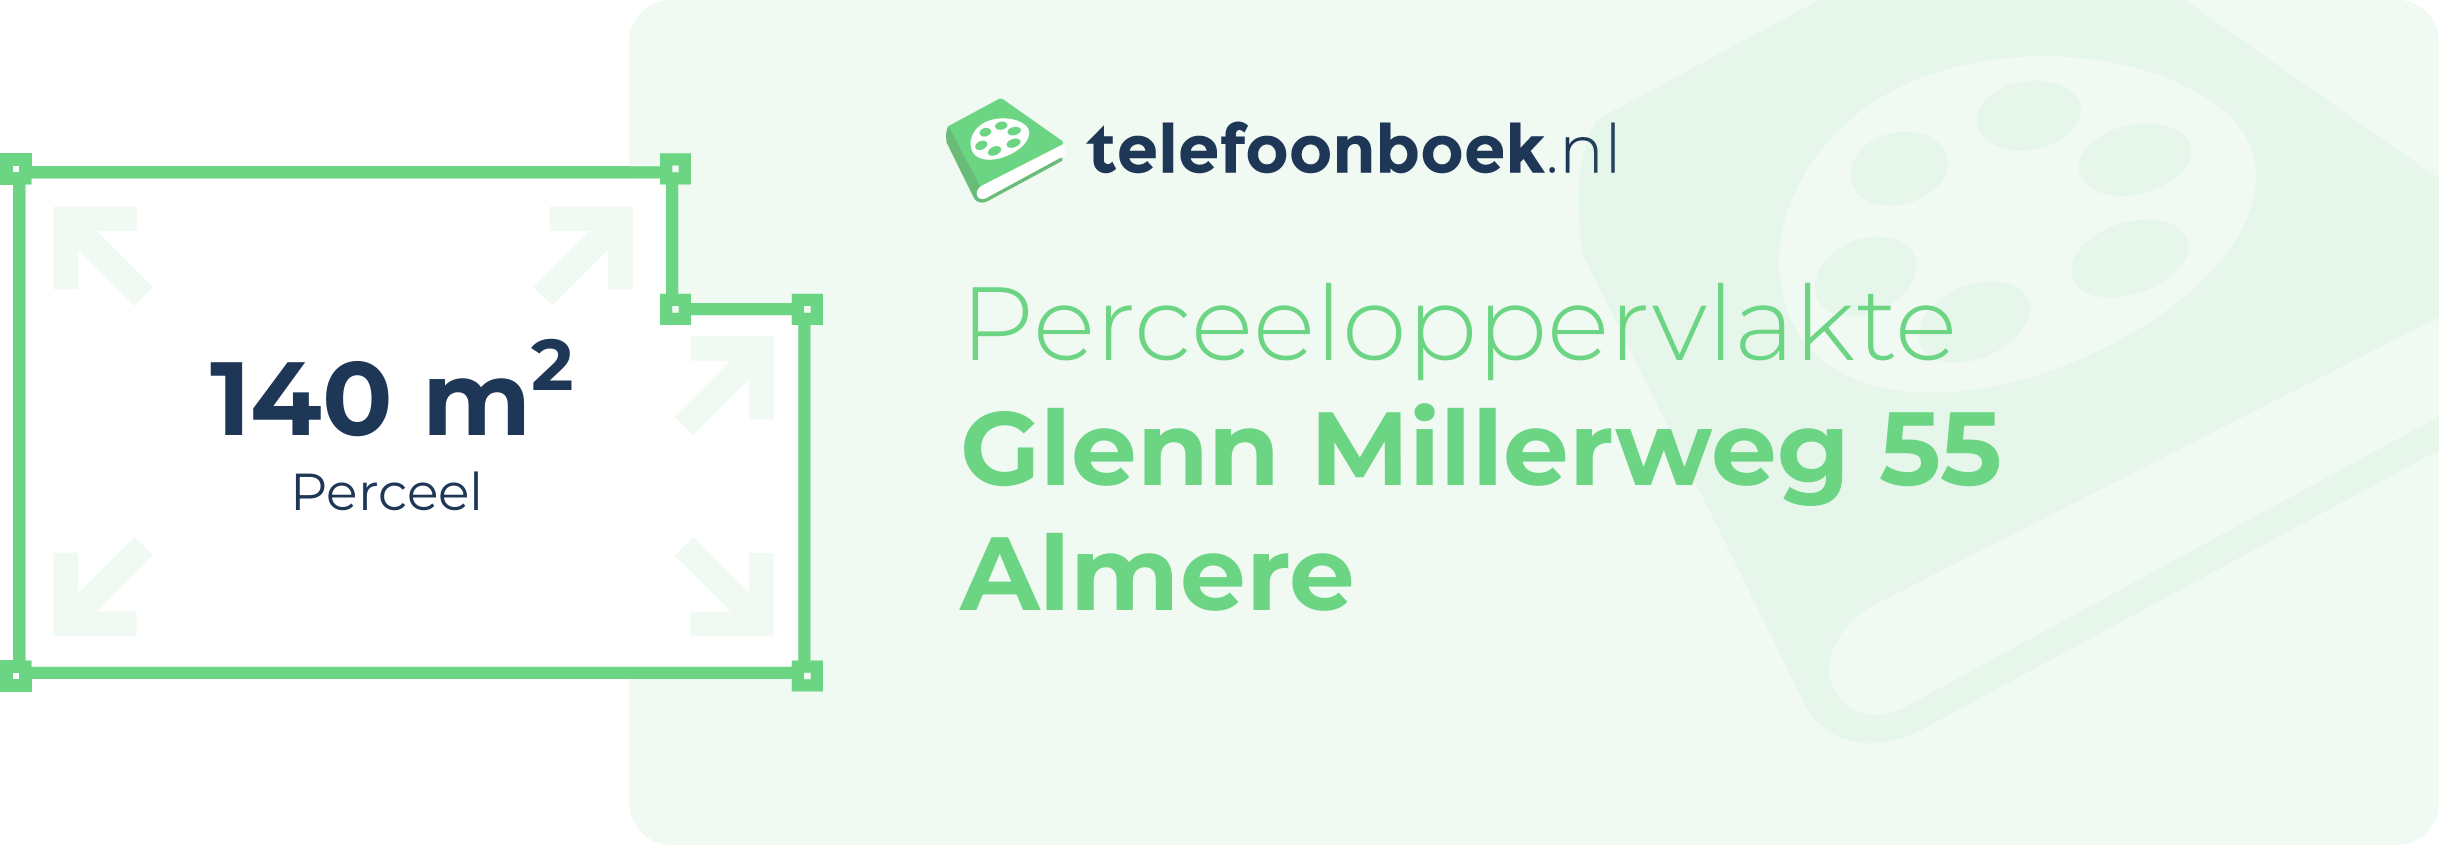 Perceeloppervlakte Glenn Millerweg 55 Almere